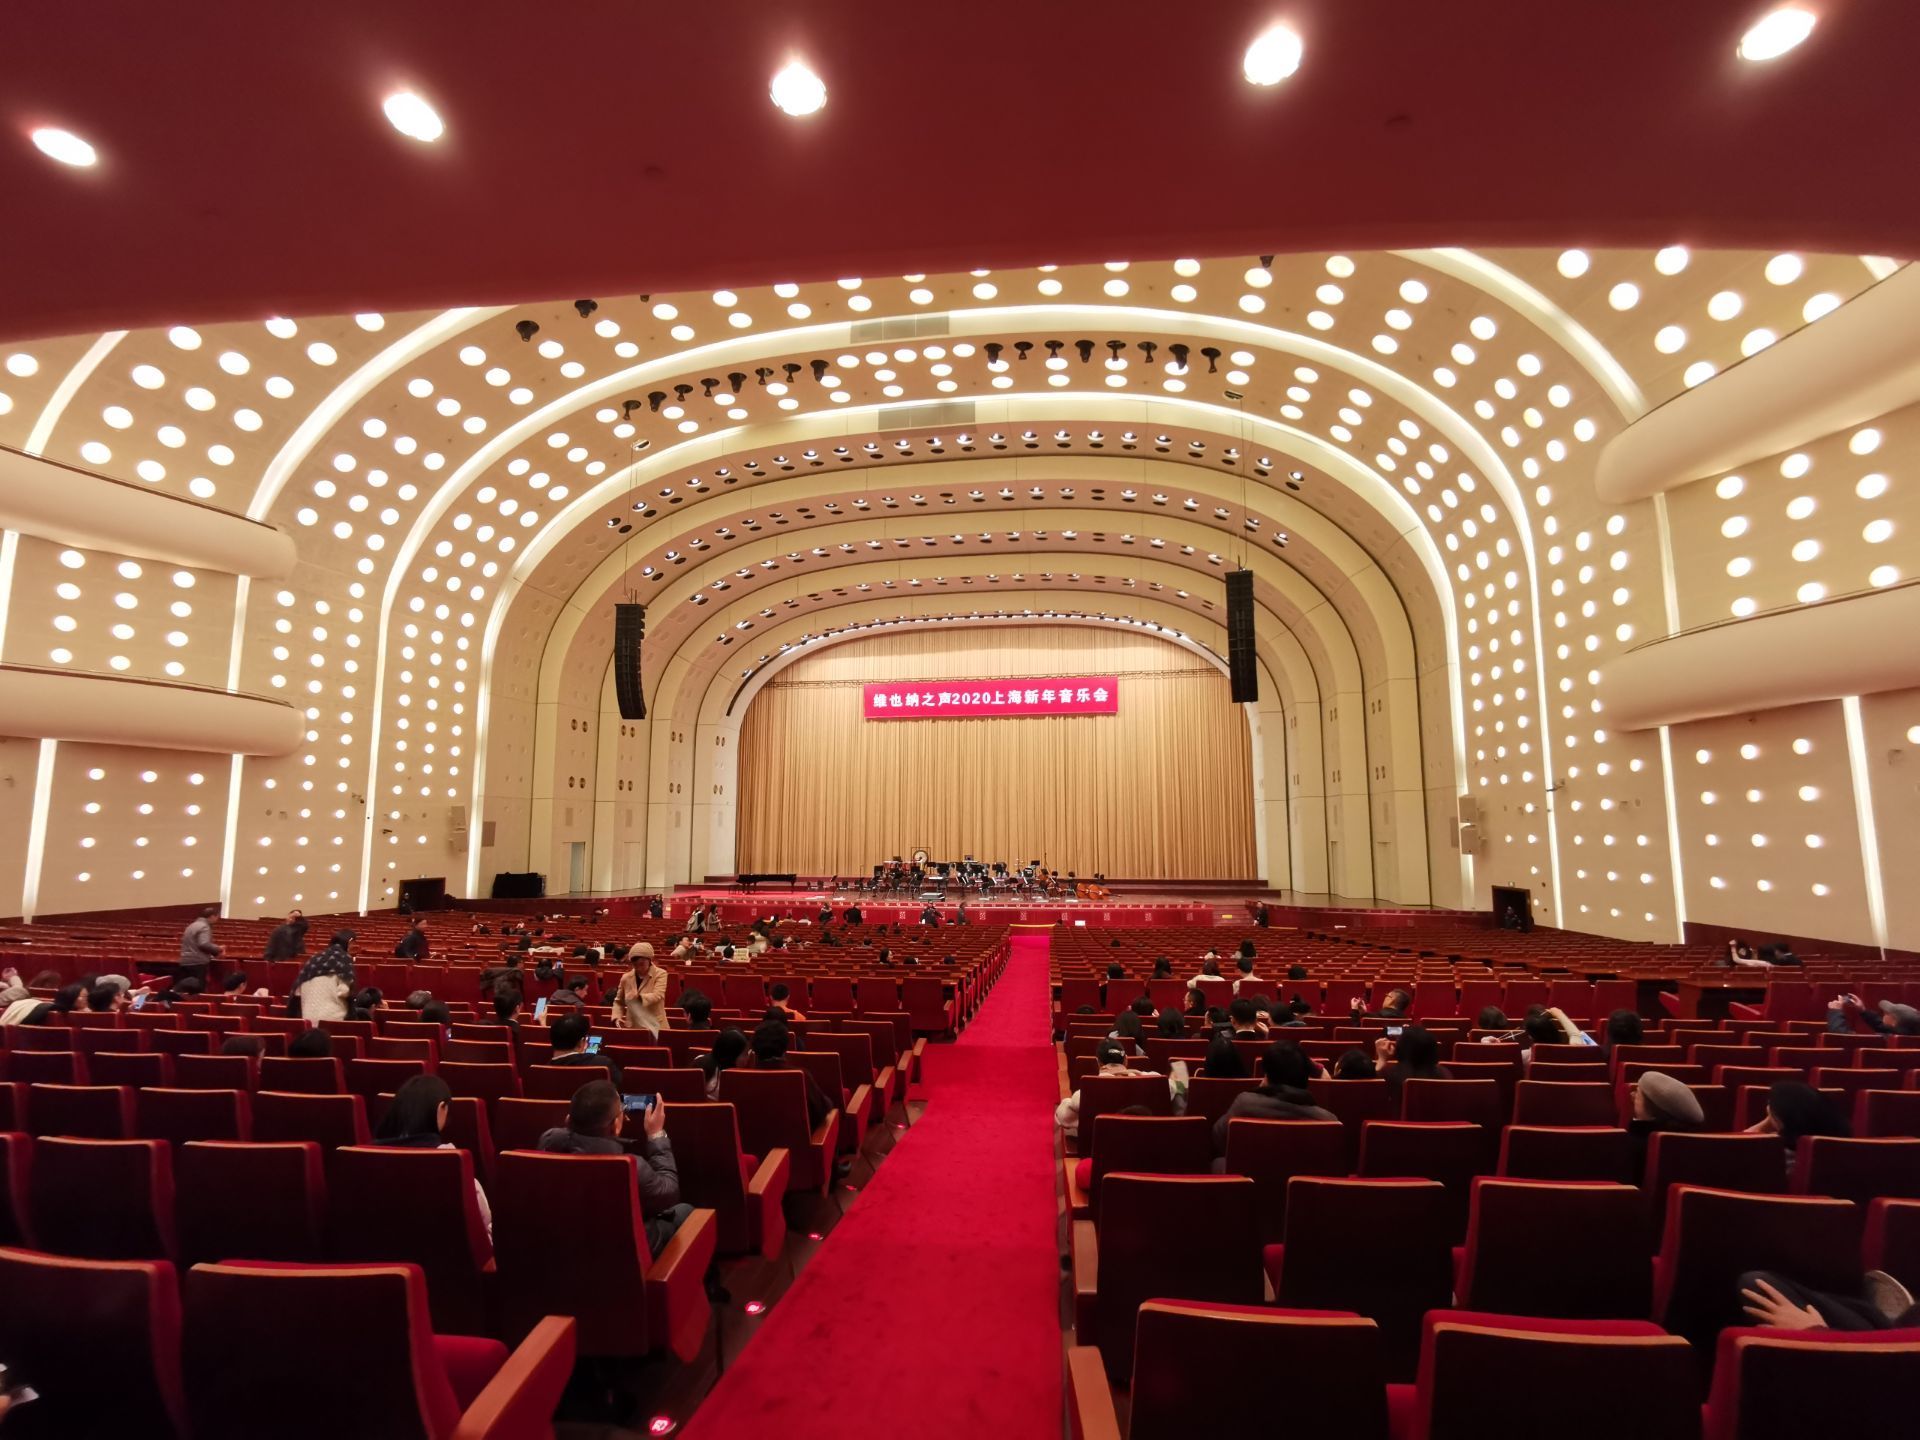 【携程攻略】上海世博会博物馆景点,来世博红厅听维也纳新年音乐会